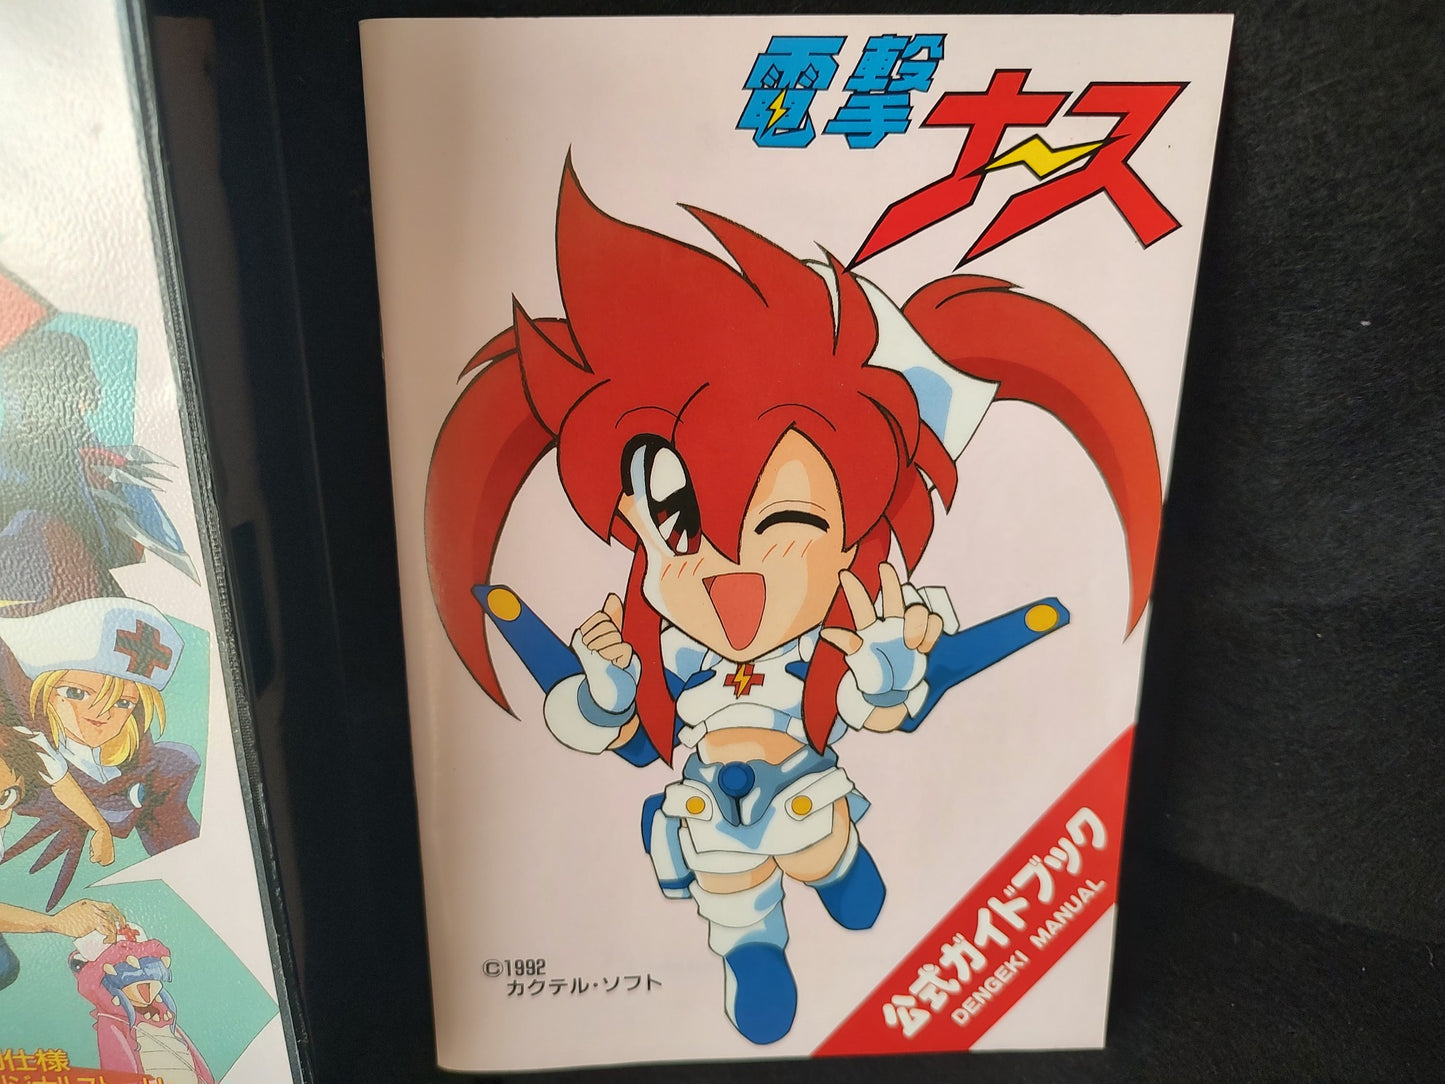 Dengeki Nurse FM TOWNS Game Japan /Gamedisk,w/manual, Box set, Working-g0215-